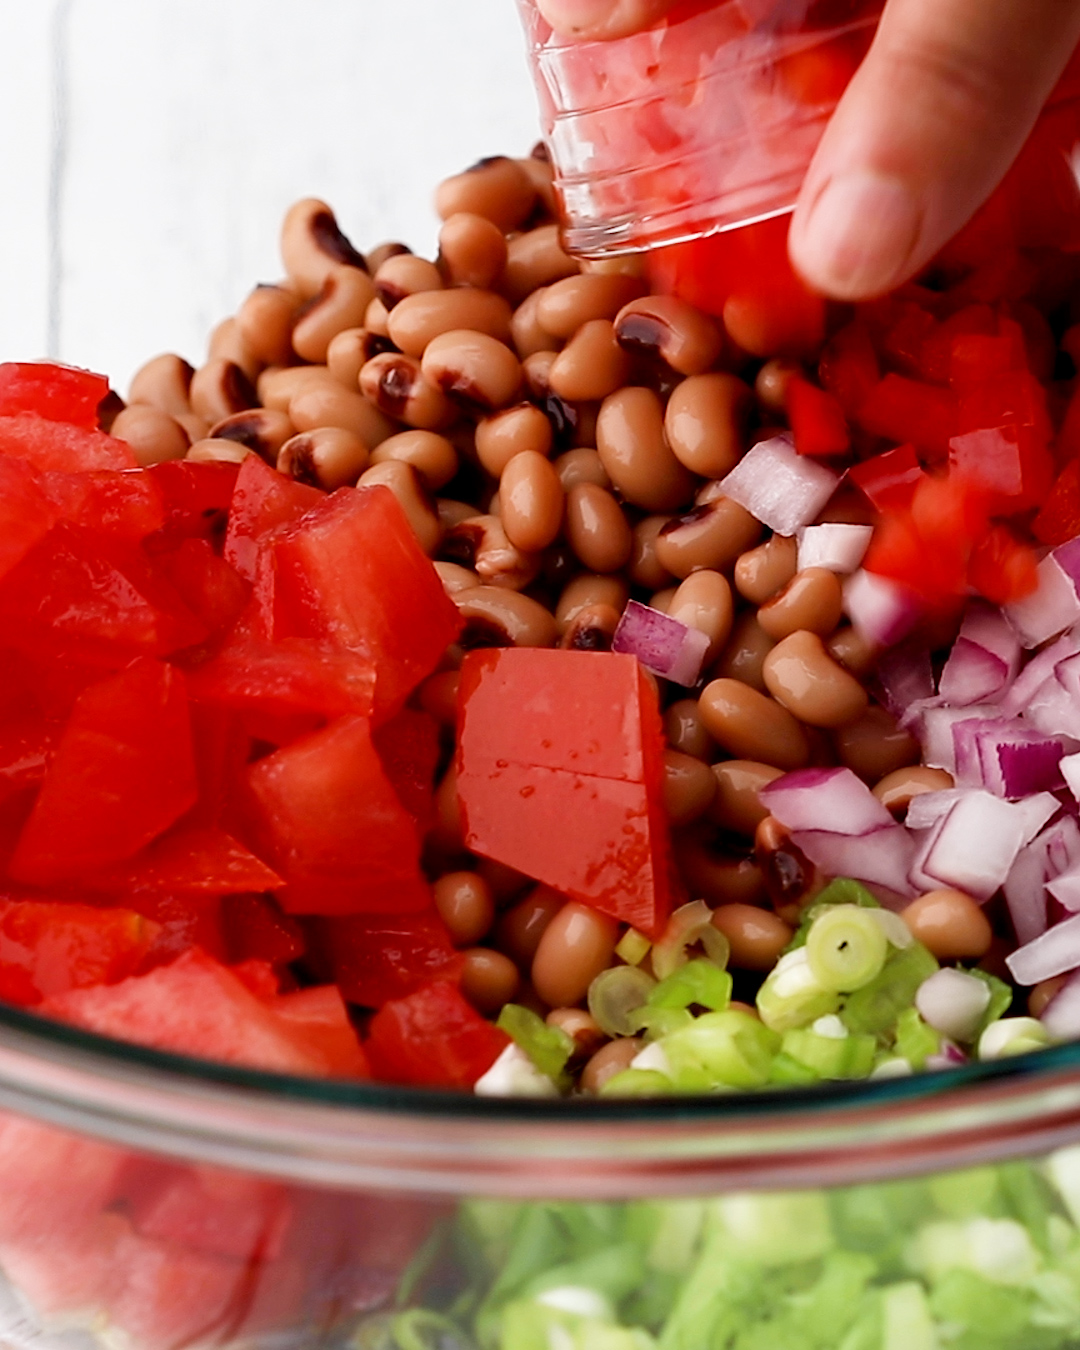 Black Eyed Peas Salad Step 2 Add all ingredients